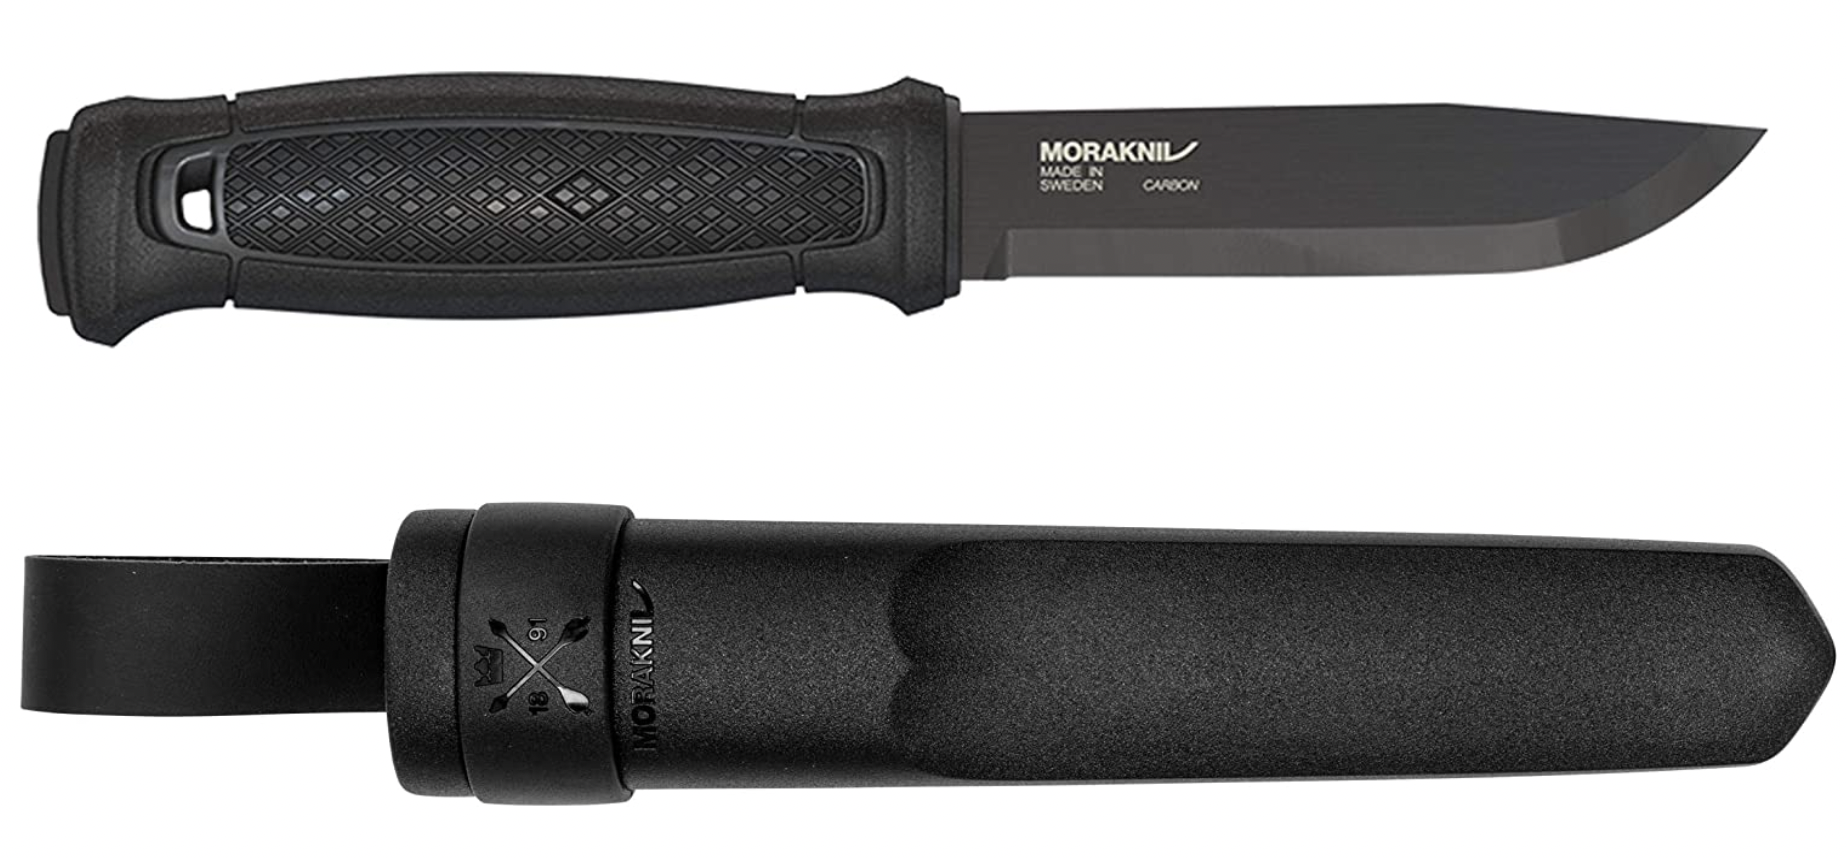 The all black Morkaniv Garberg knife and sheath